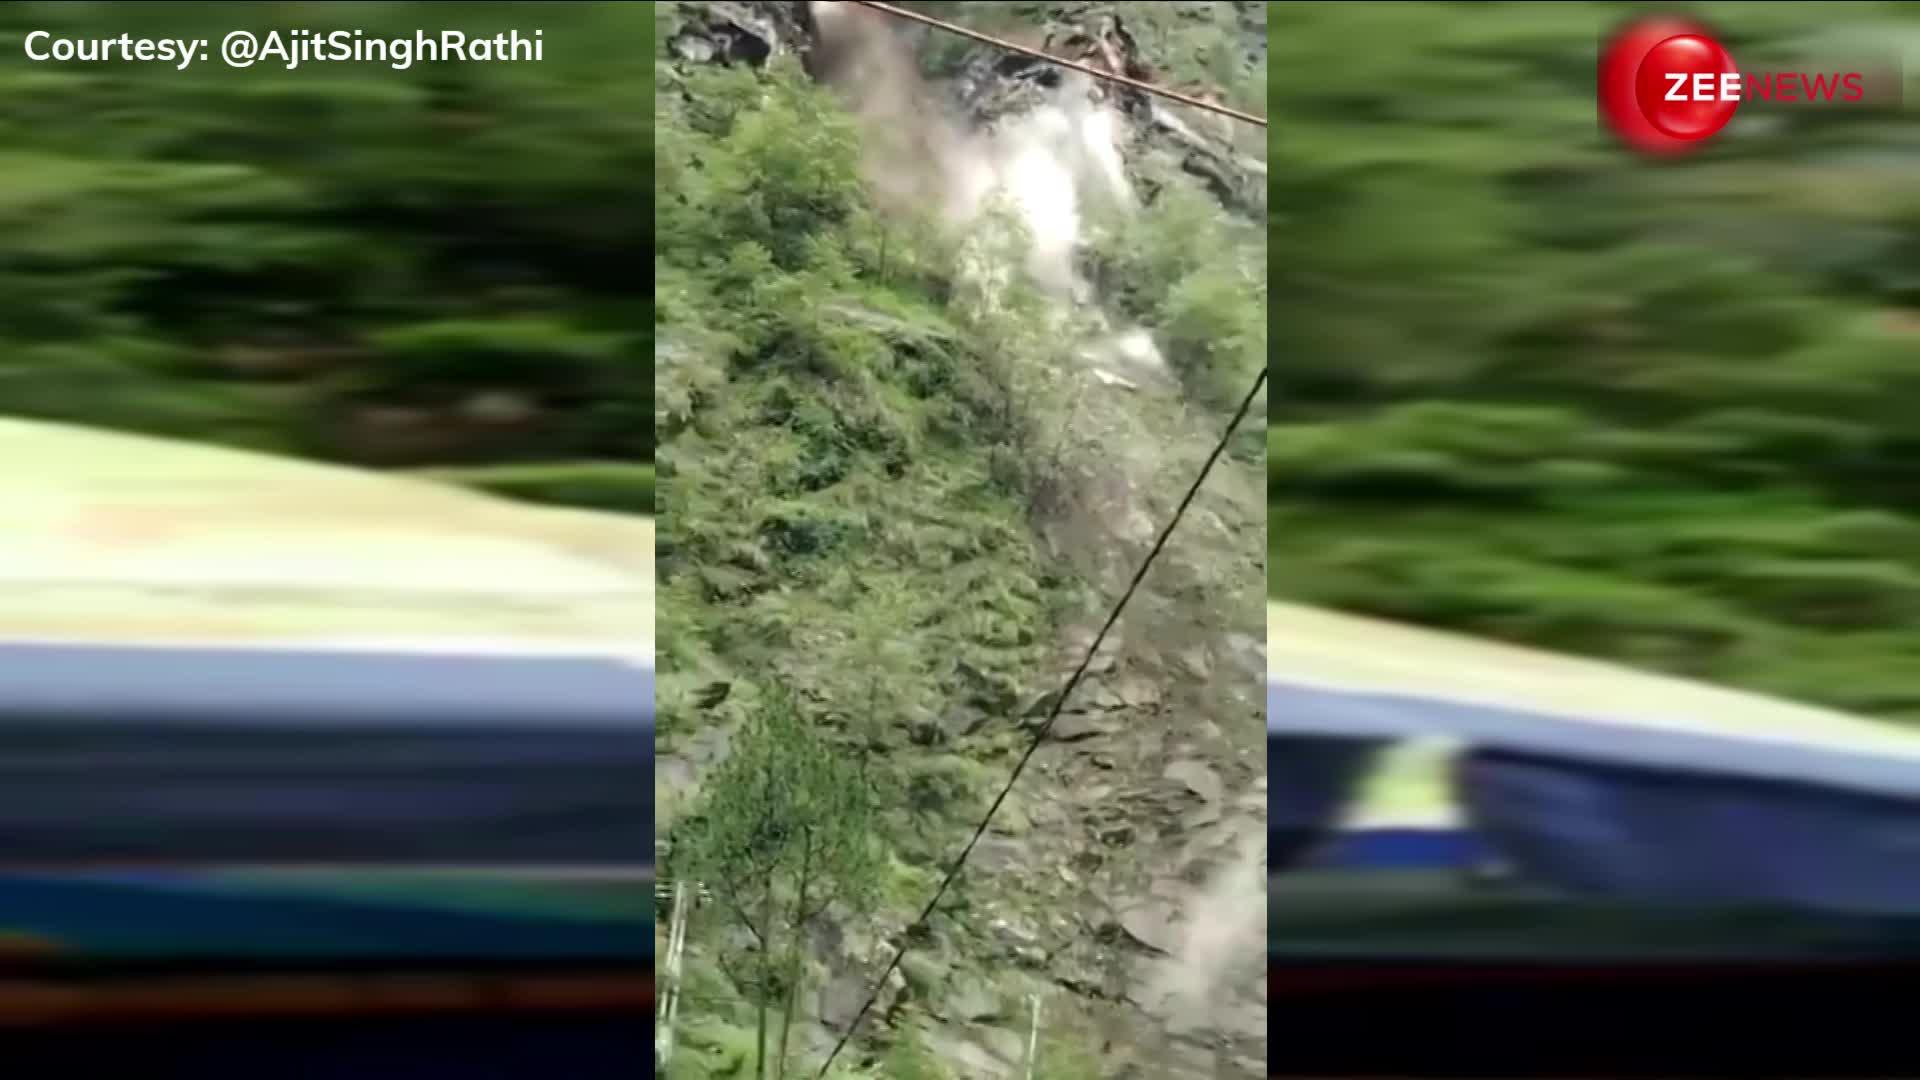 केदारनाथ के सोनप्रयाग में भरभराकर गिरा पहाड़, मची चीख-पुकार; Video में देखें खौफनाक मंजर